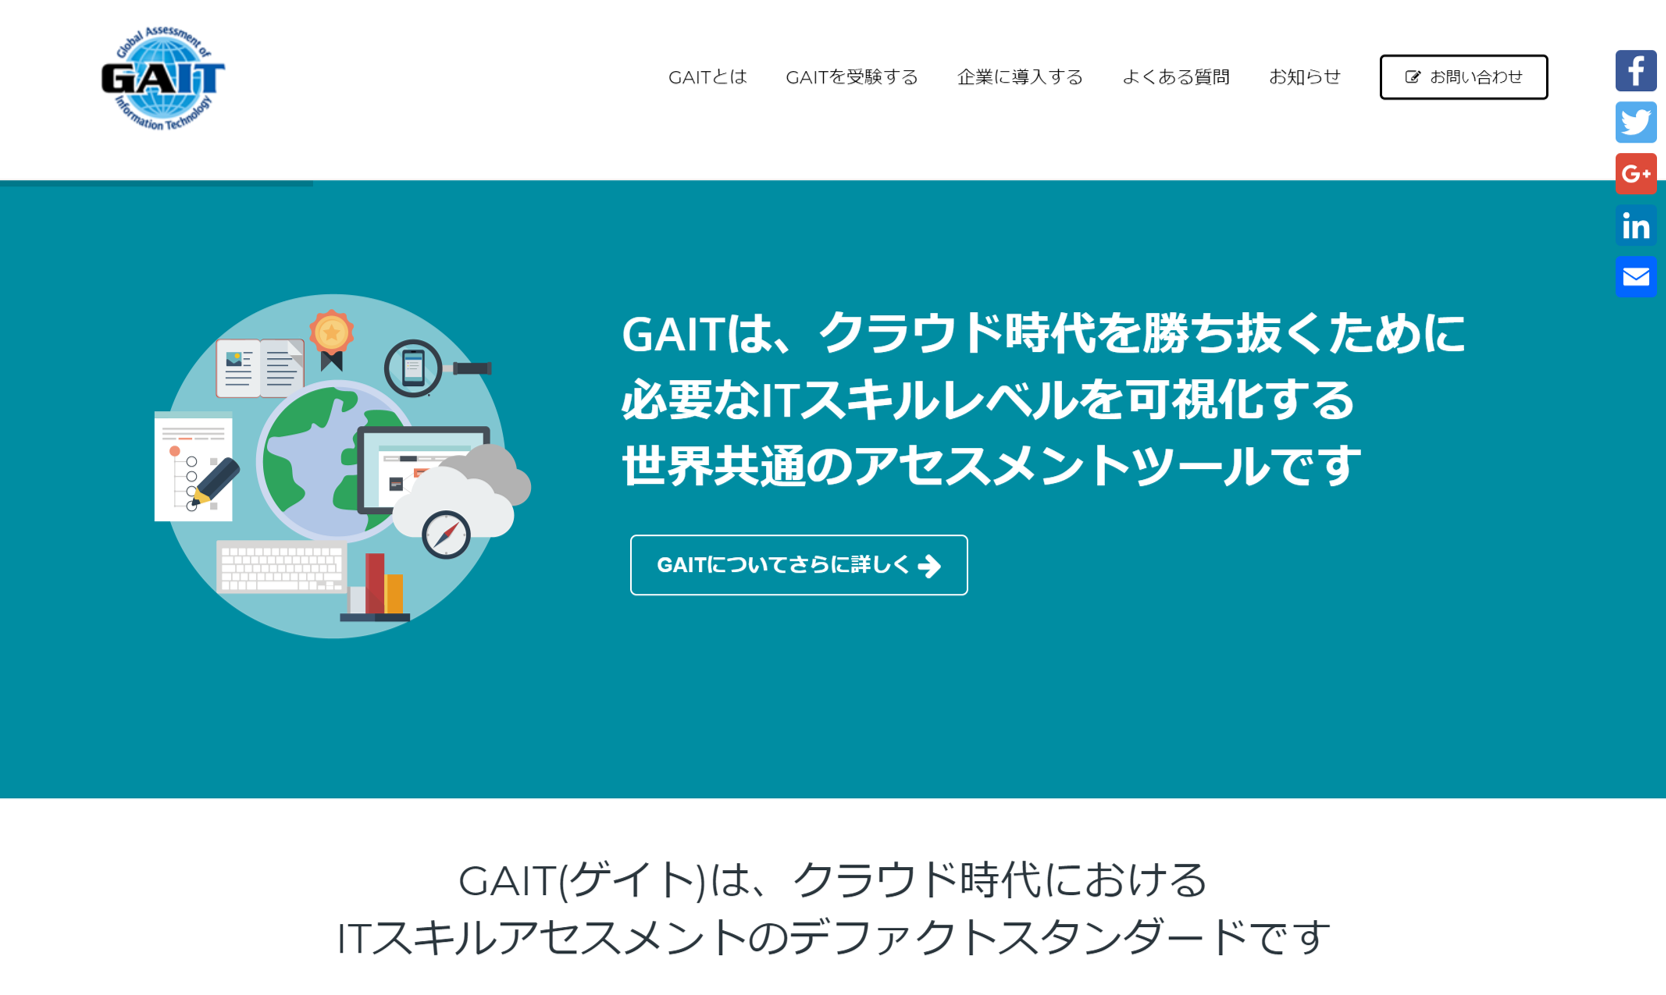 GAIT英語版 公式サイト